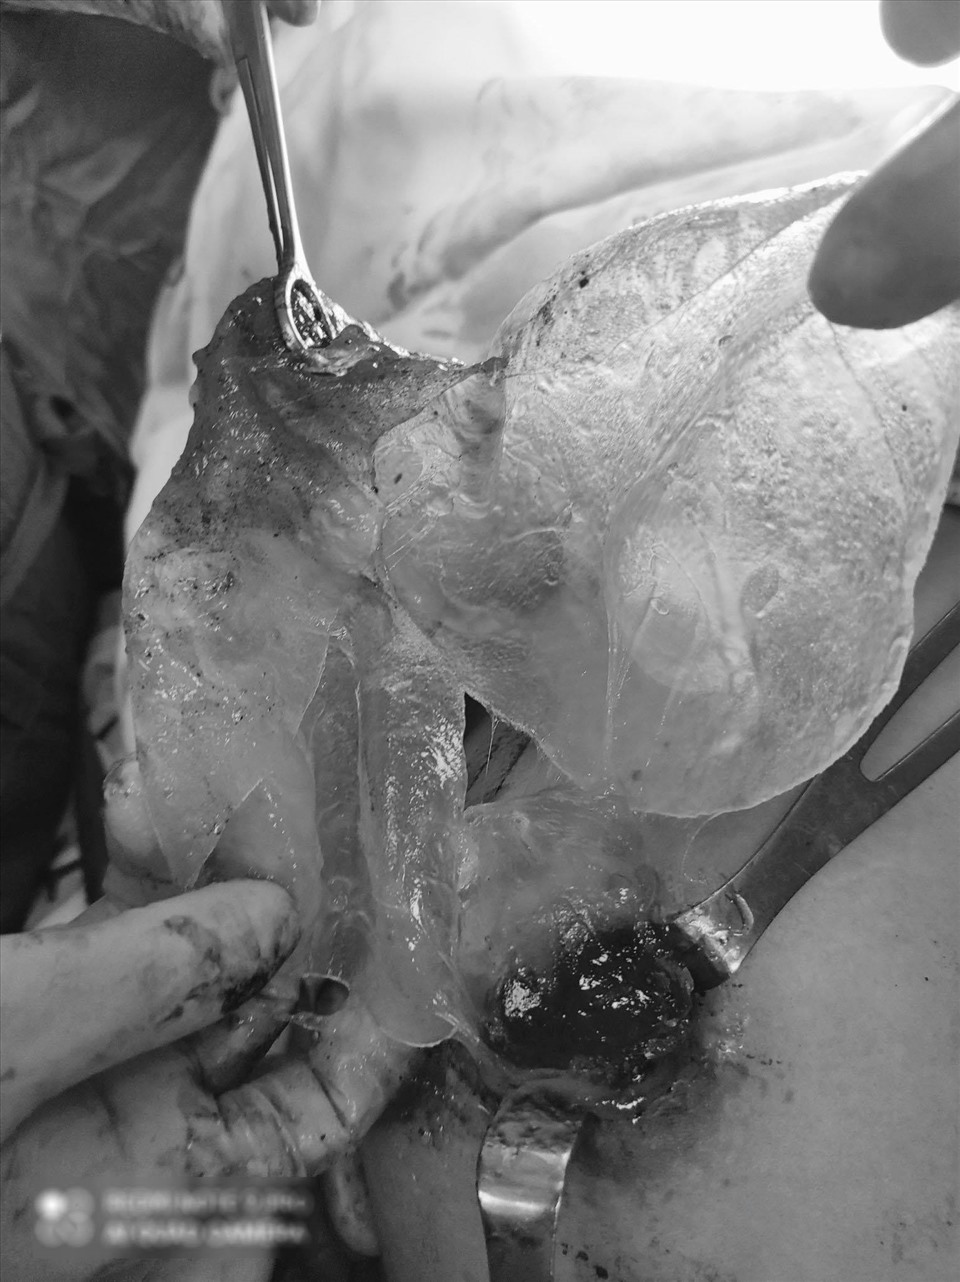 Phẫu thuật viên lấy túi ngực vỡ ra khỏi ngực bệnh nhân. Ảnh do bác sĩ cung cấp.